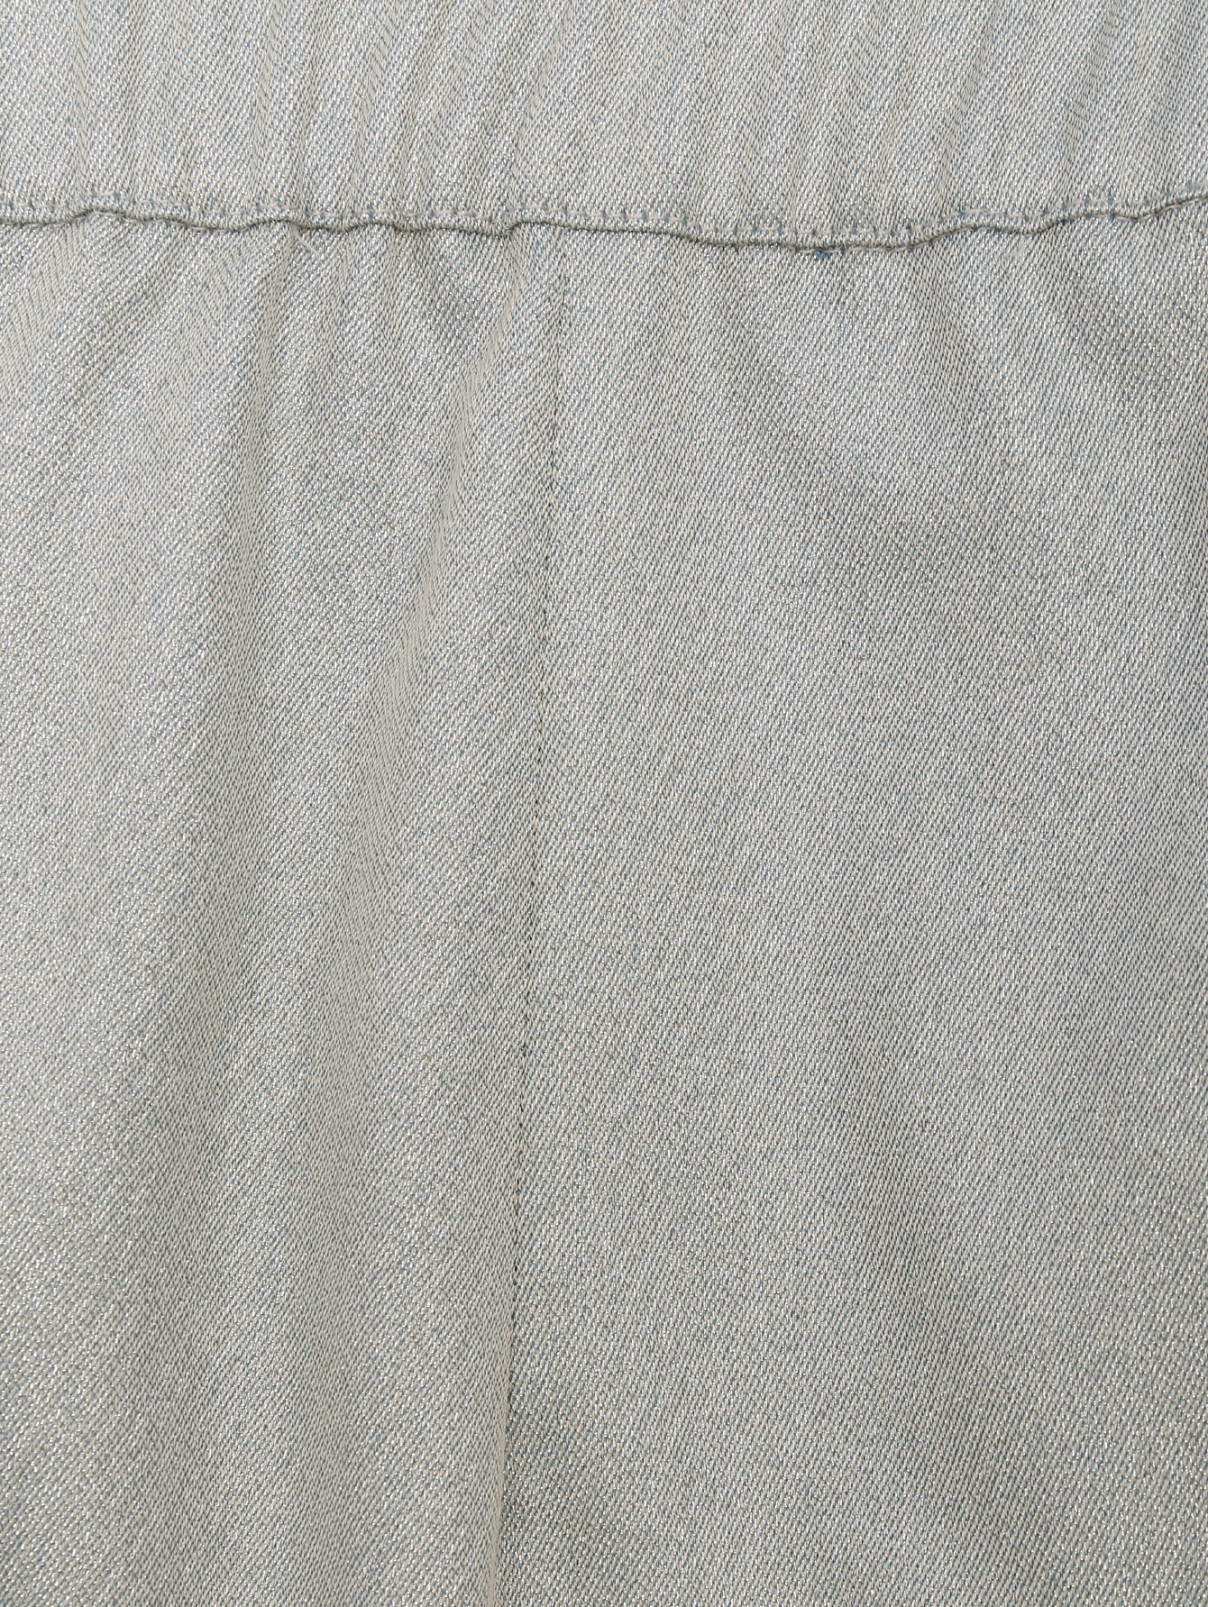 Брюки из хлопка с металлизированной нитью Marina Rinaldi  –  Деталь  – Цвет:  Серый